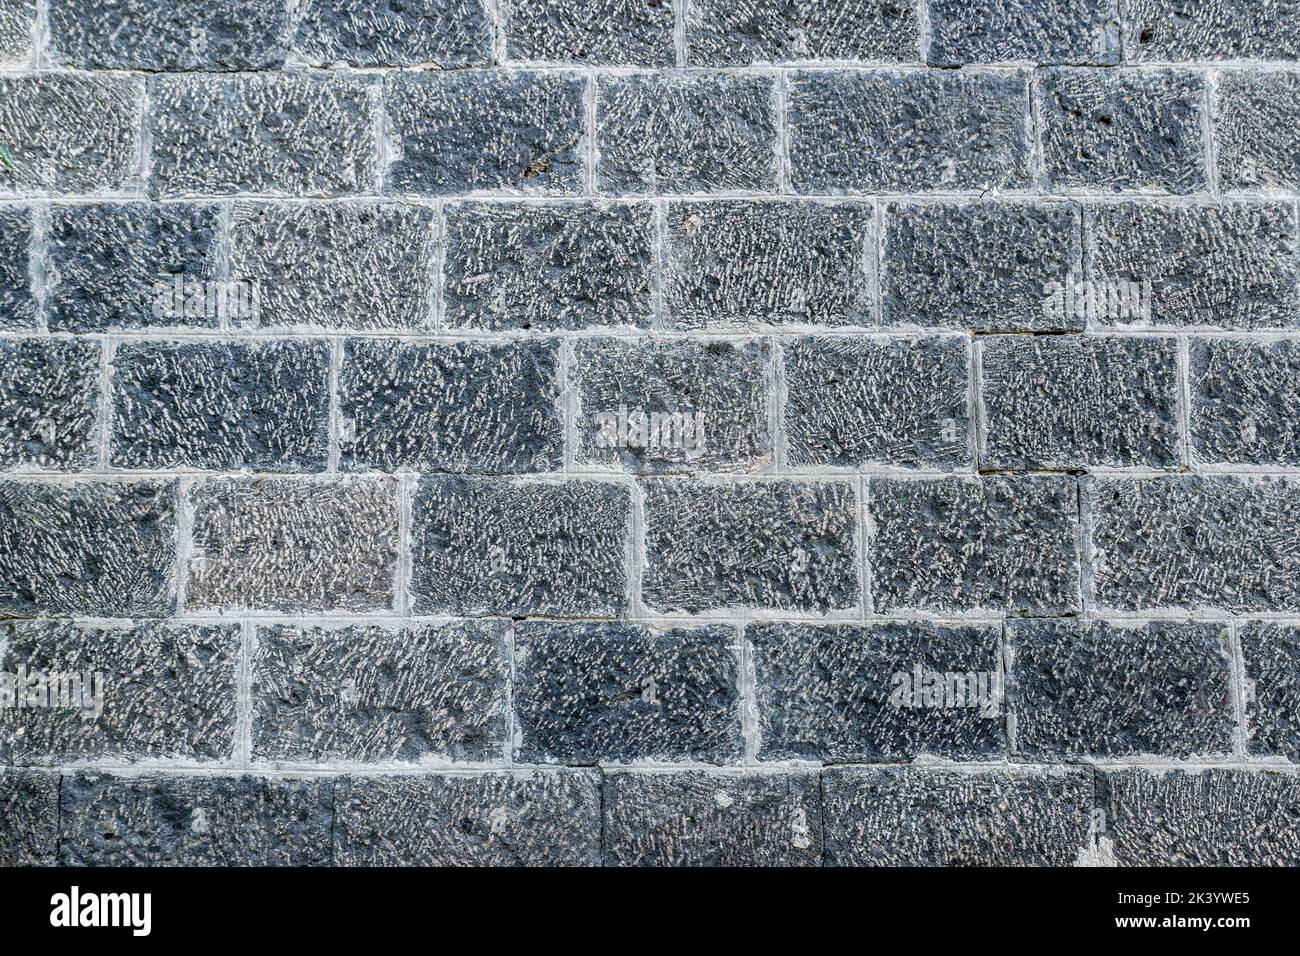 Ladrillos blancos en gris claro en la decoración de la pared para el fondo. Texturas de pared de ladrillo de piedra. Fotografía de alta calidad Foto de stock